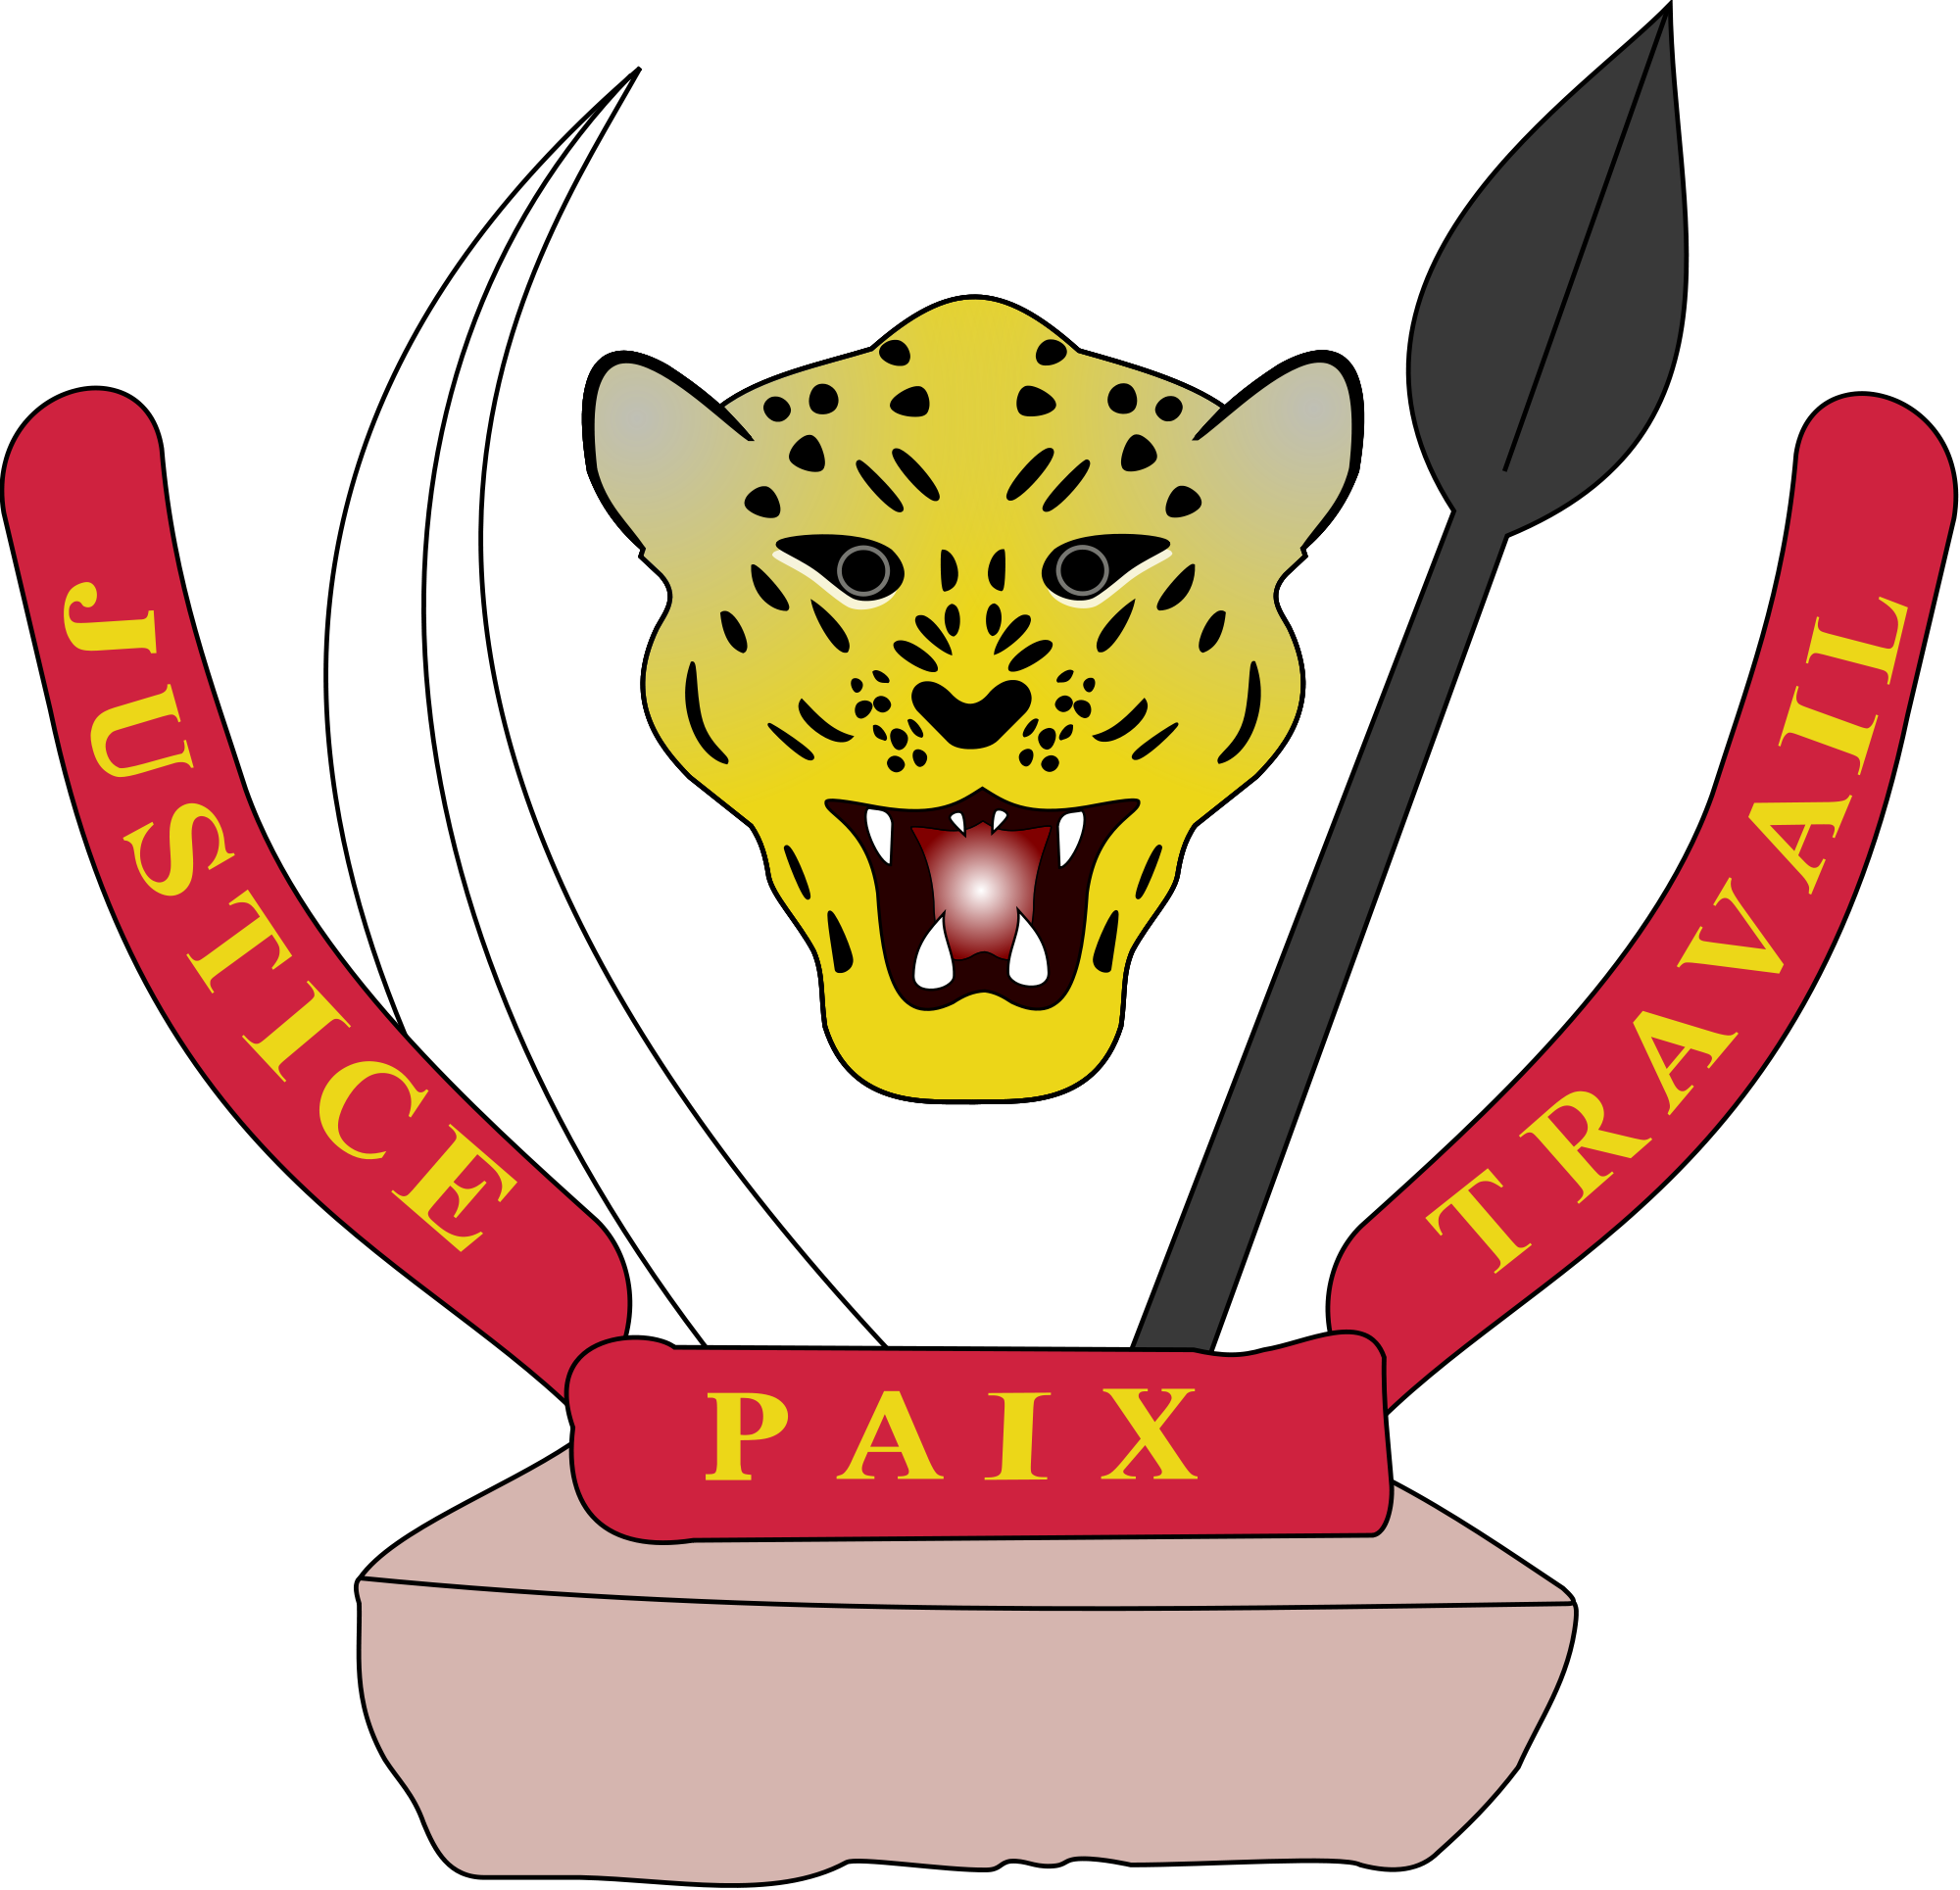 Emblem of D.R.Congo